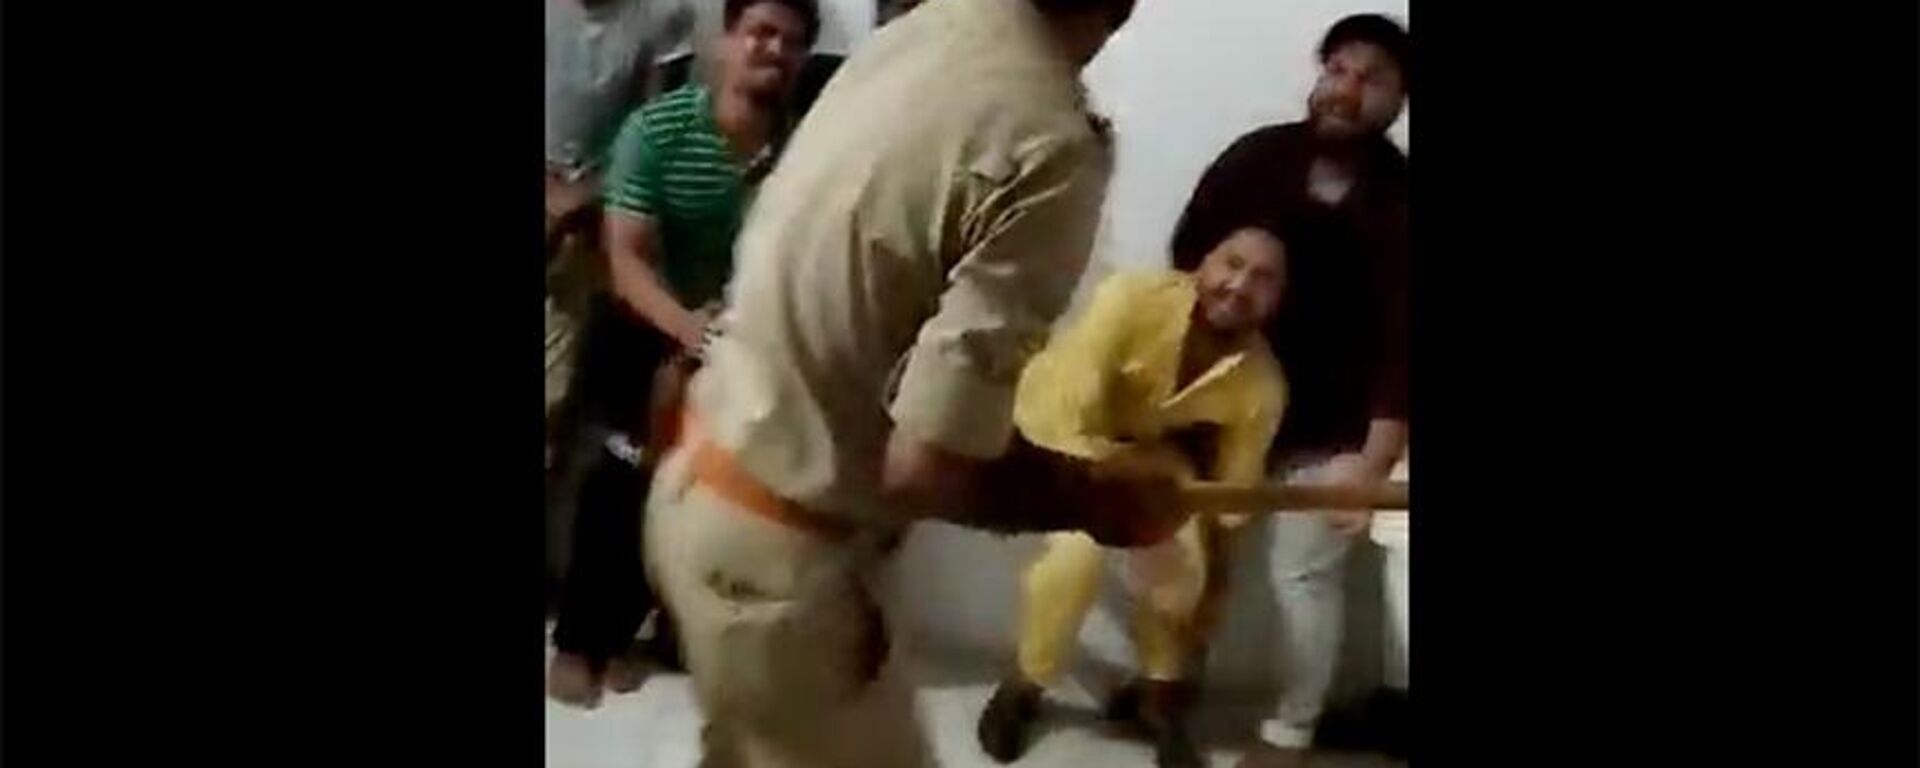 Hindistan'da gözaltındaki Müslüman erkeklere polisin beyzbol sopası gibi salladığı çubuklarla dayak atma videosu, Uttar Pradeş eyaletinin Saharanpur kentinde çekildi.  - Sputnik Türkiye, 1920, 17.06.2022